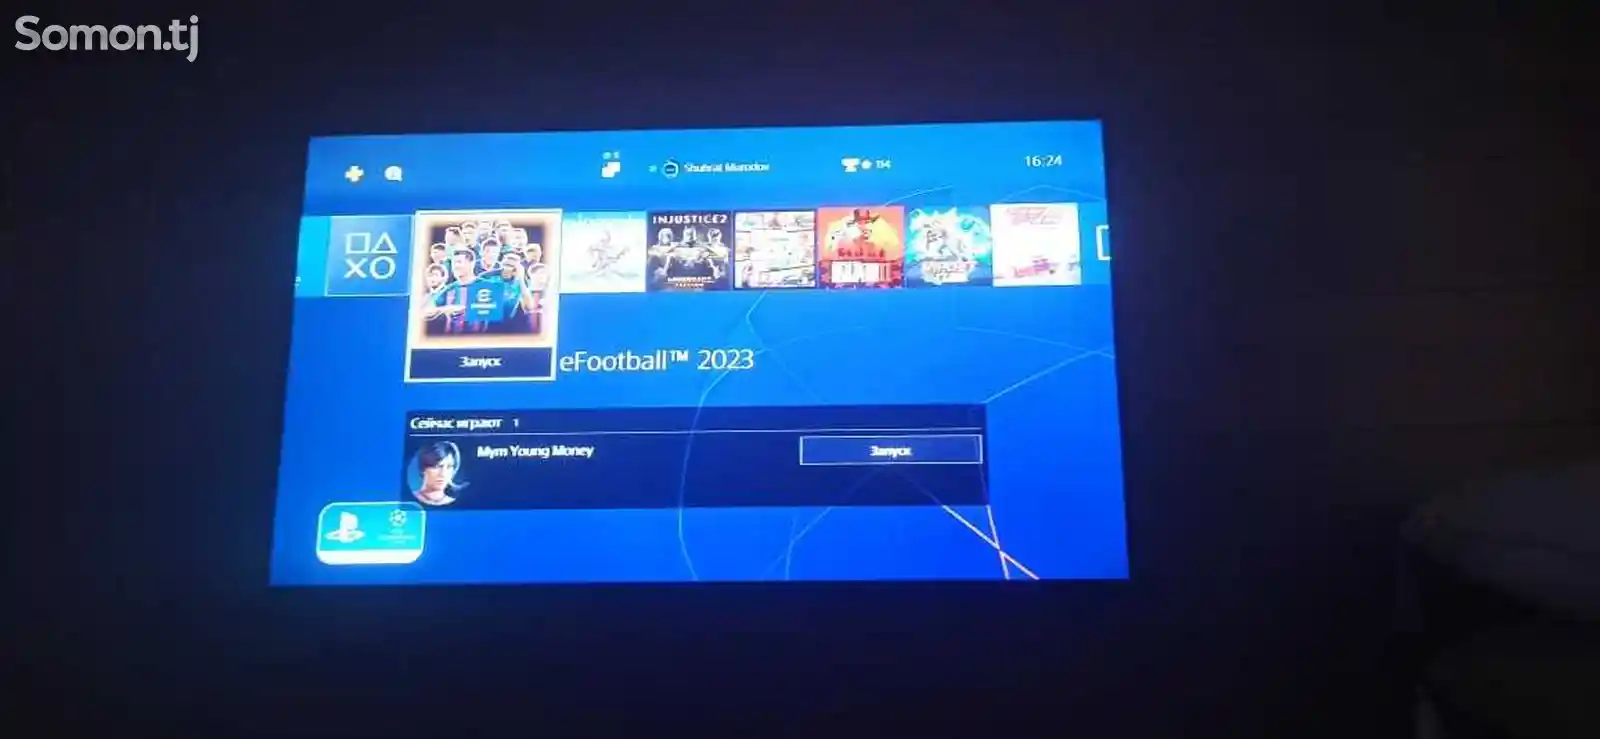 Игровая приставка Sony PlayStation 4 pro-2